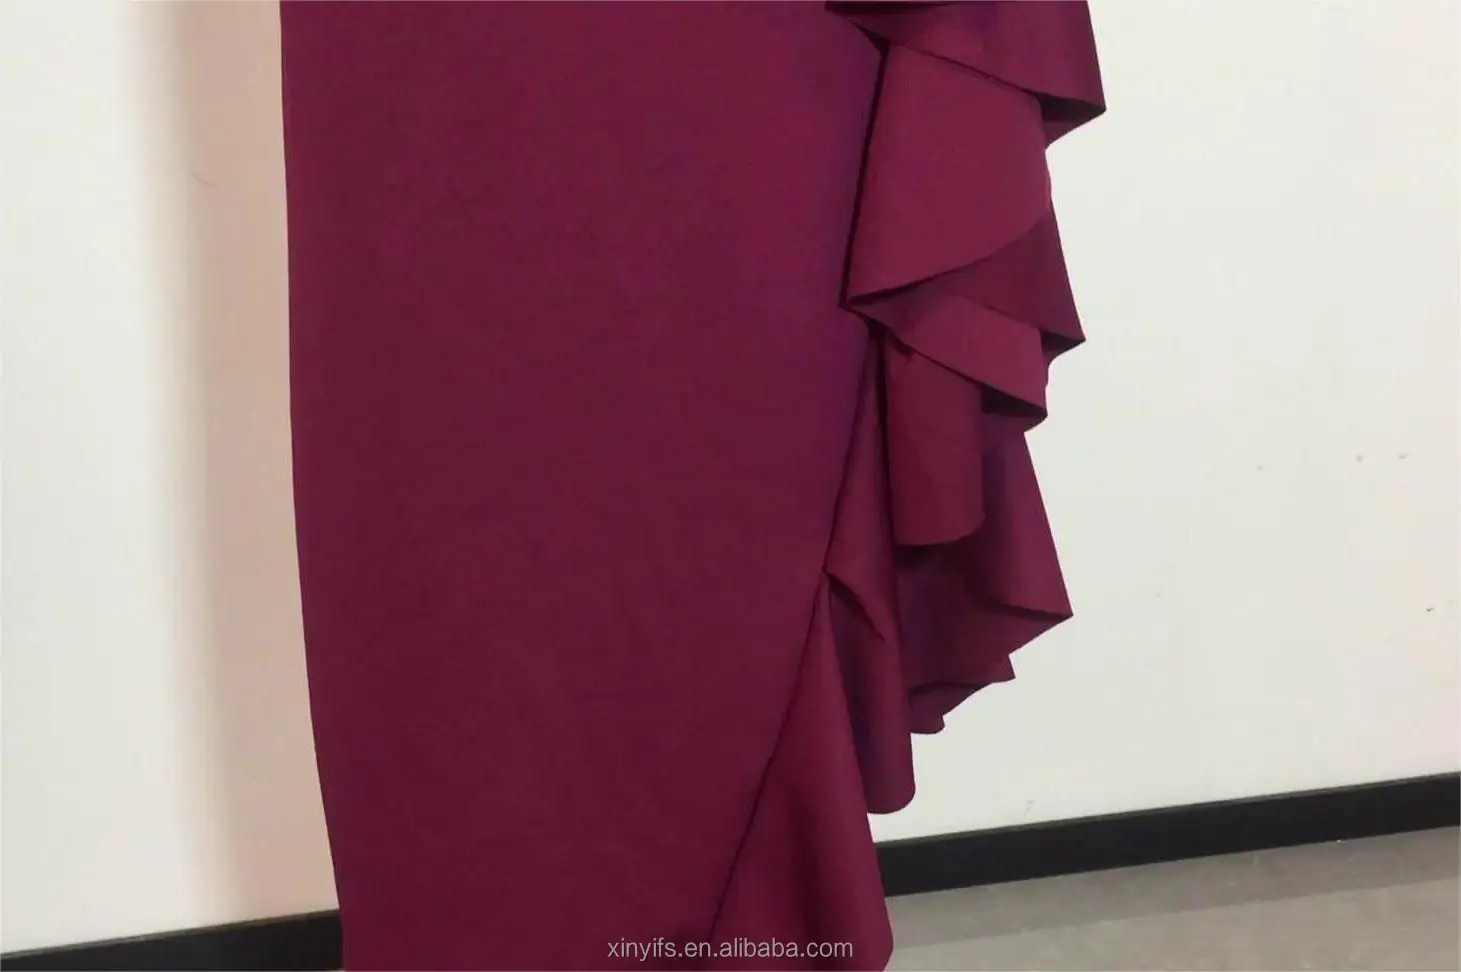 Strapless Floor Length V- Neck Sleeveless Evening Dresses Women Feminino Red Dresses Gown High Slit Ruffles